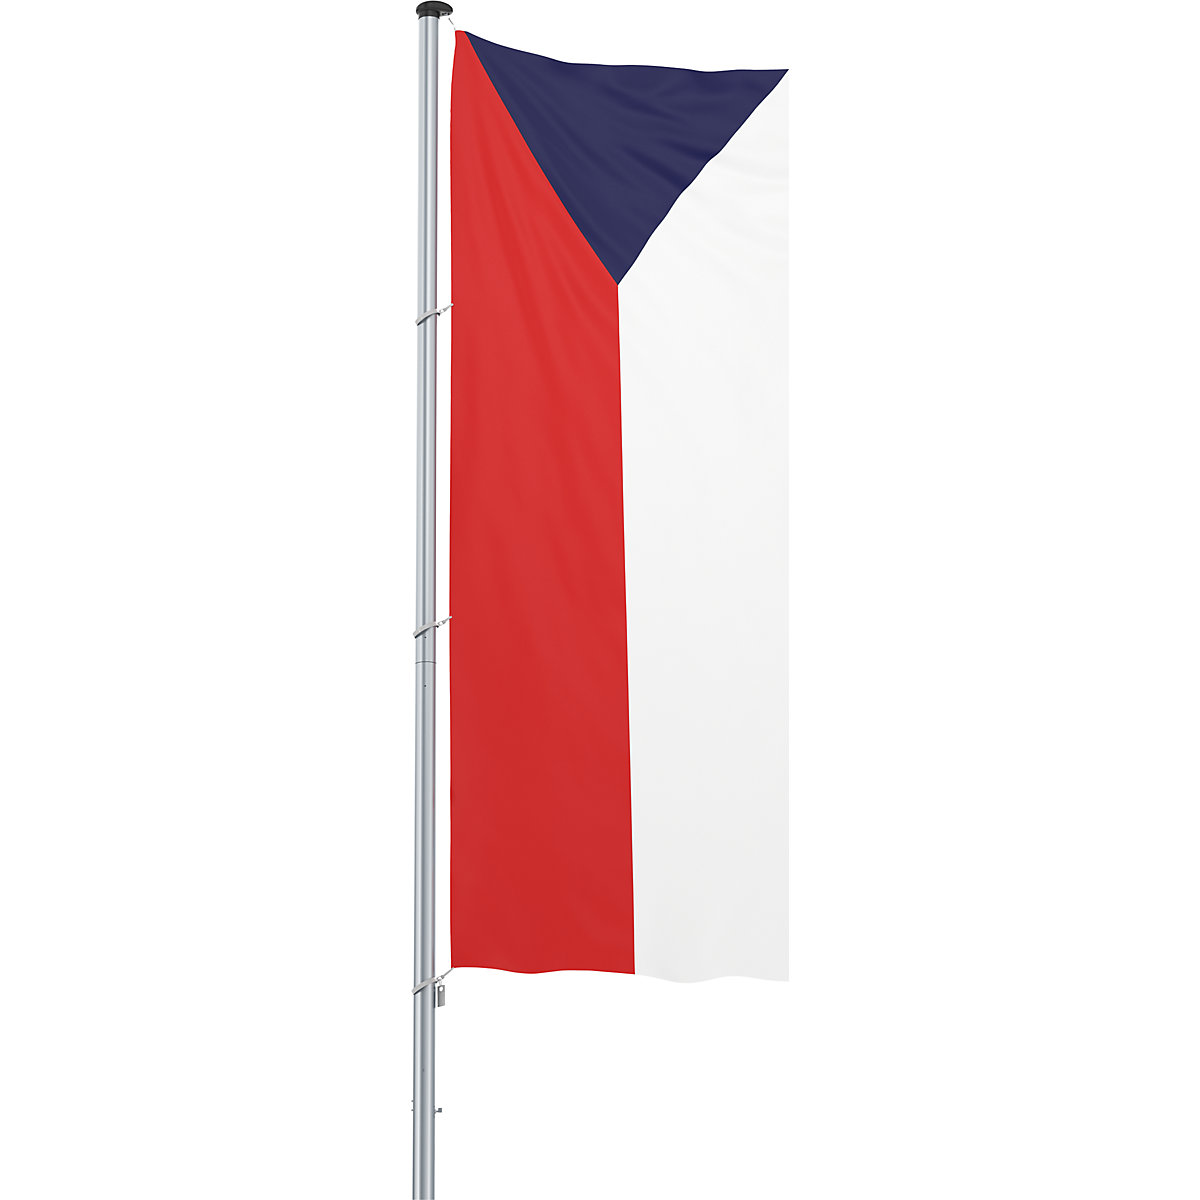 Hijsvlag/landvlag – Mannus, formaat 1,2 x 3 m, Tsjechische Republiek-22